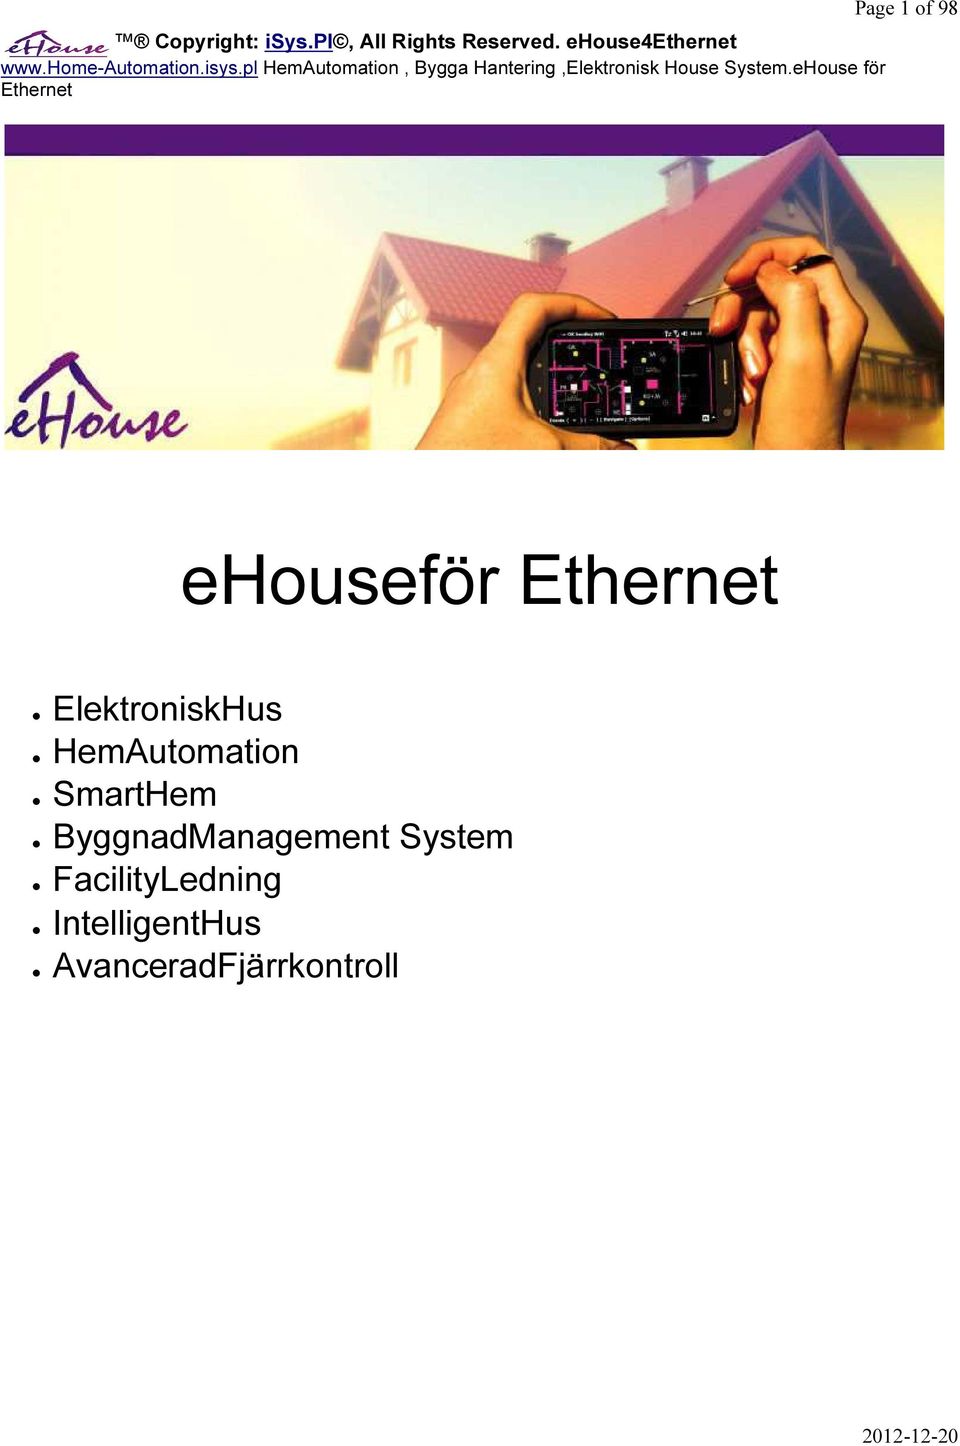 eHouse för Ethernet Page 1 of 98 ehouseför Ethernet ElektroniskHus